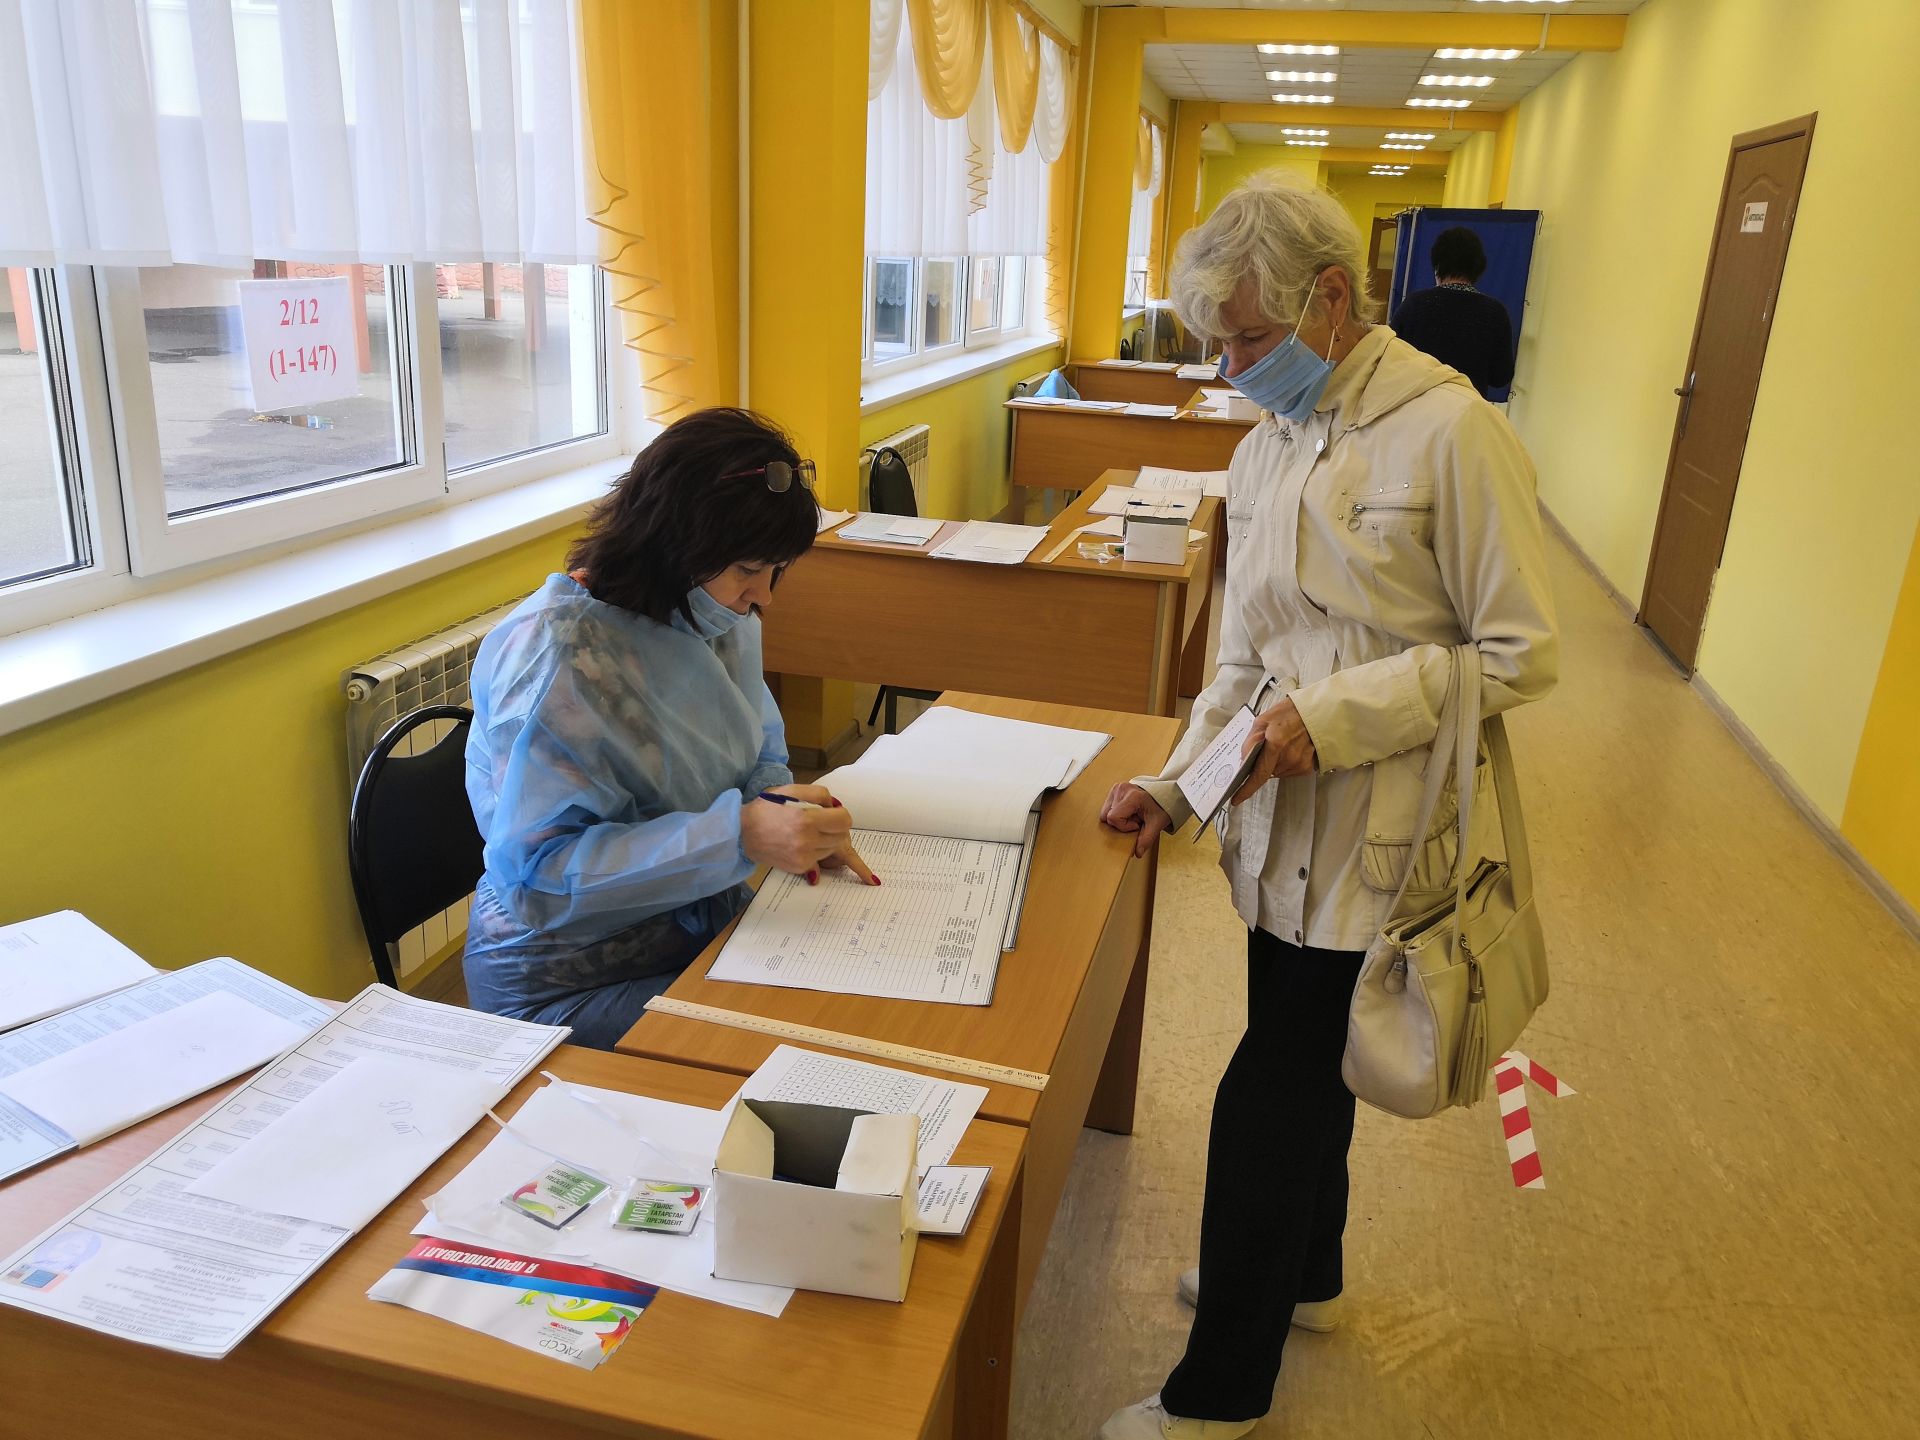 Сегодня в Камских Полянах проходит единый день голосования